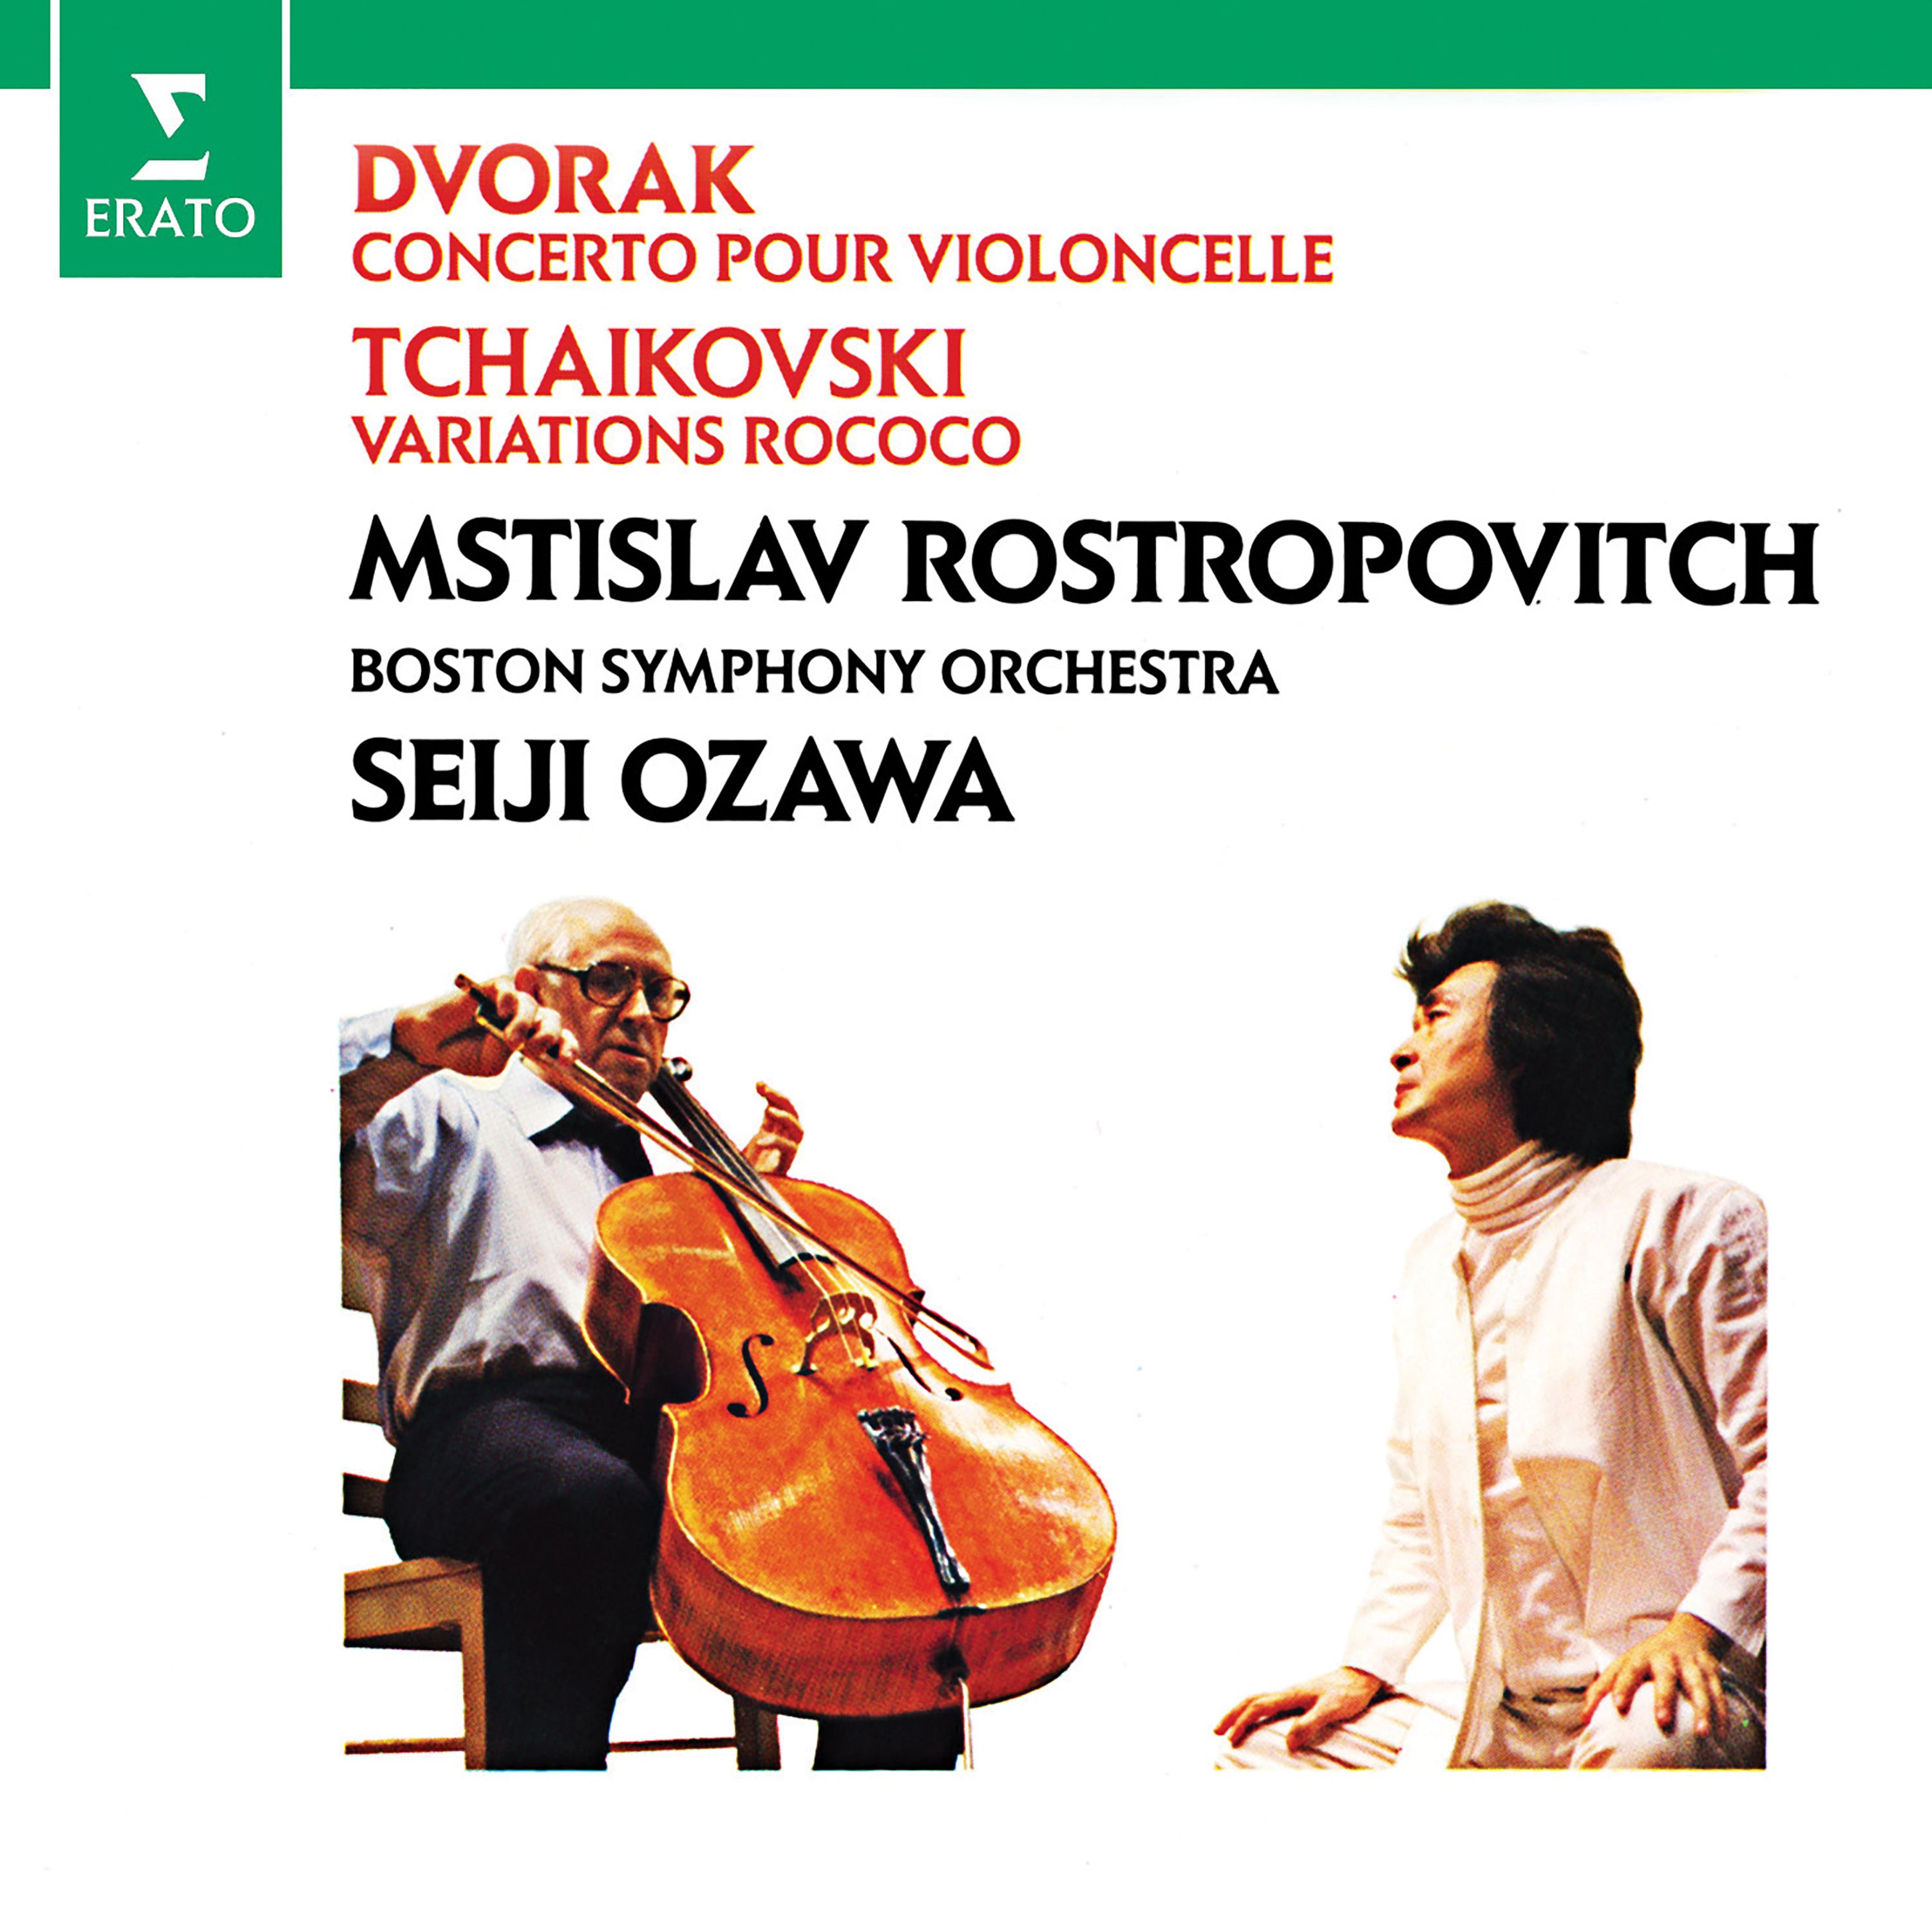 Dvora k: Cello Concerto  Tchaikovsky: Variations on a Rococo theme